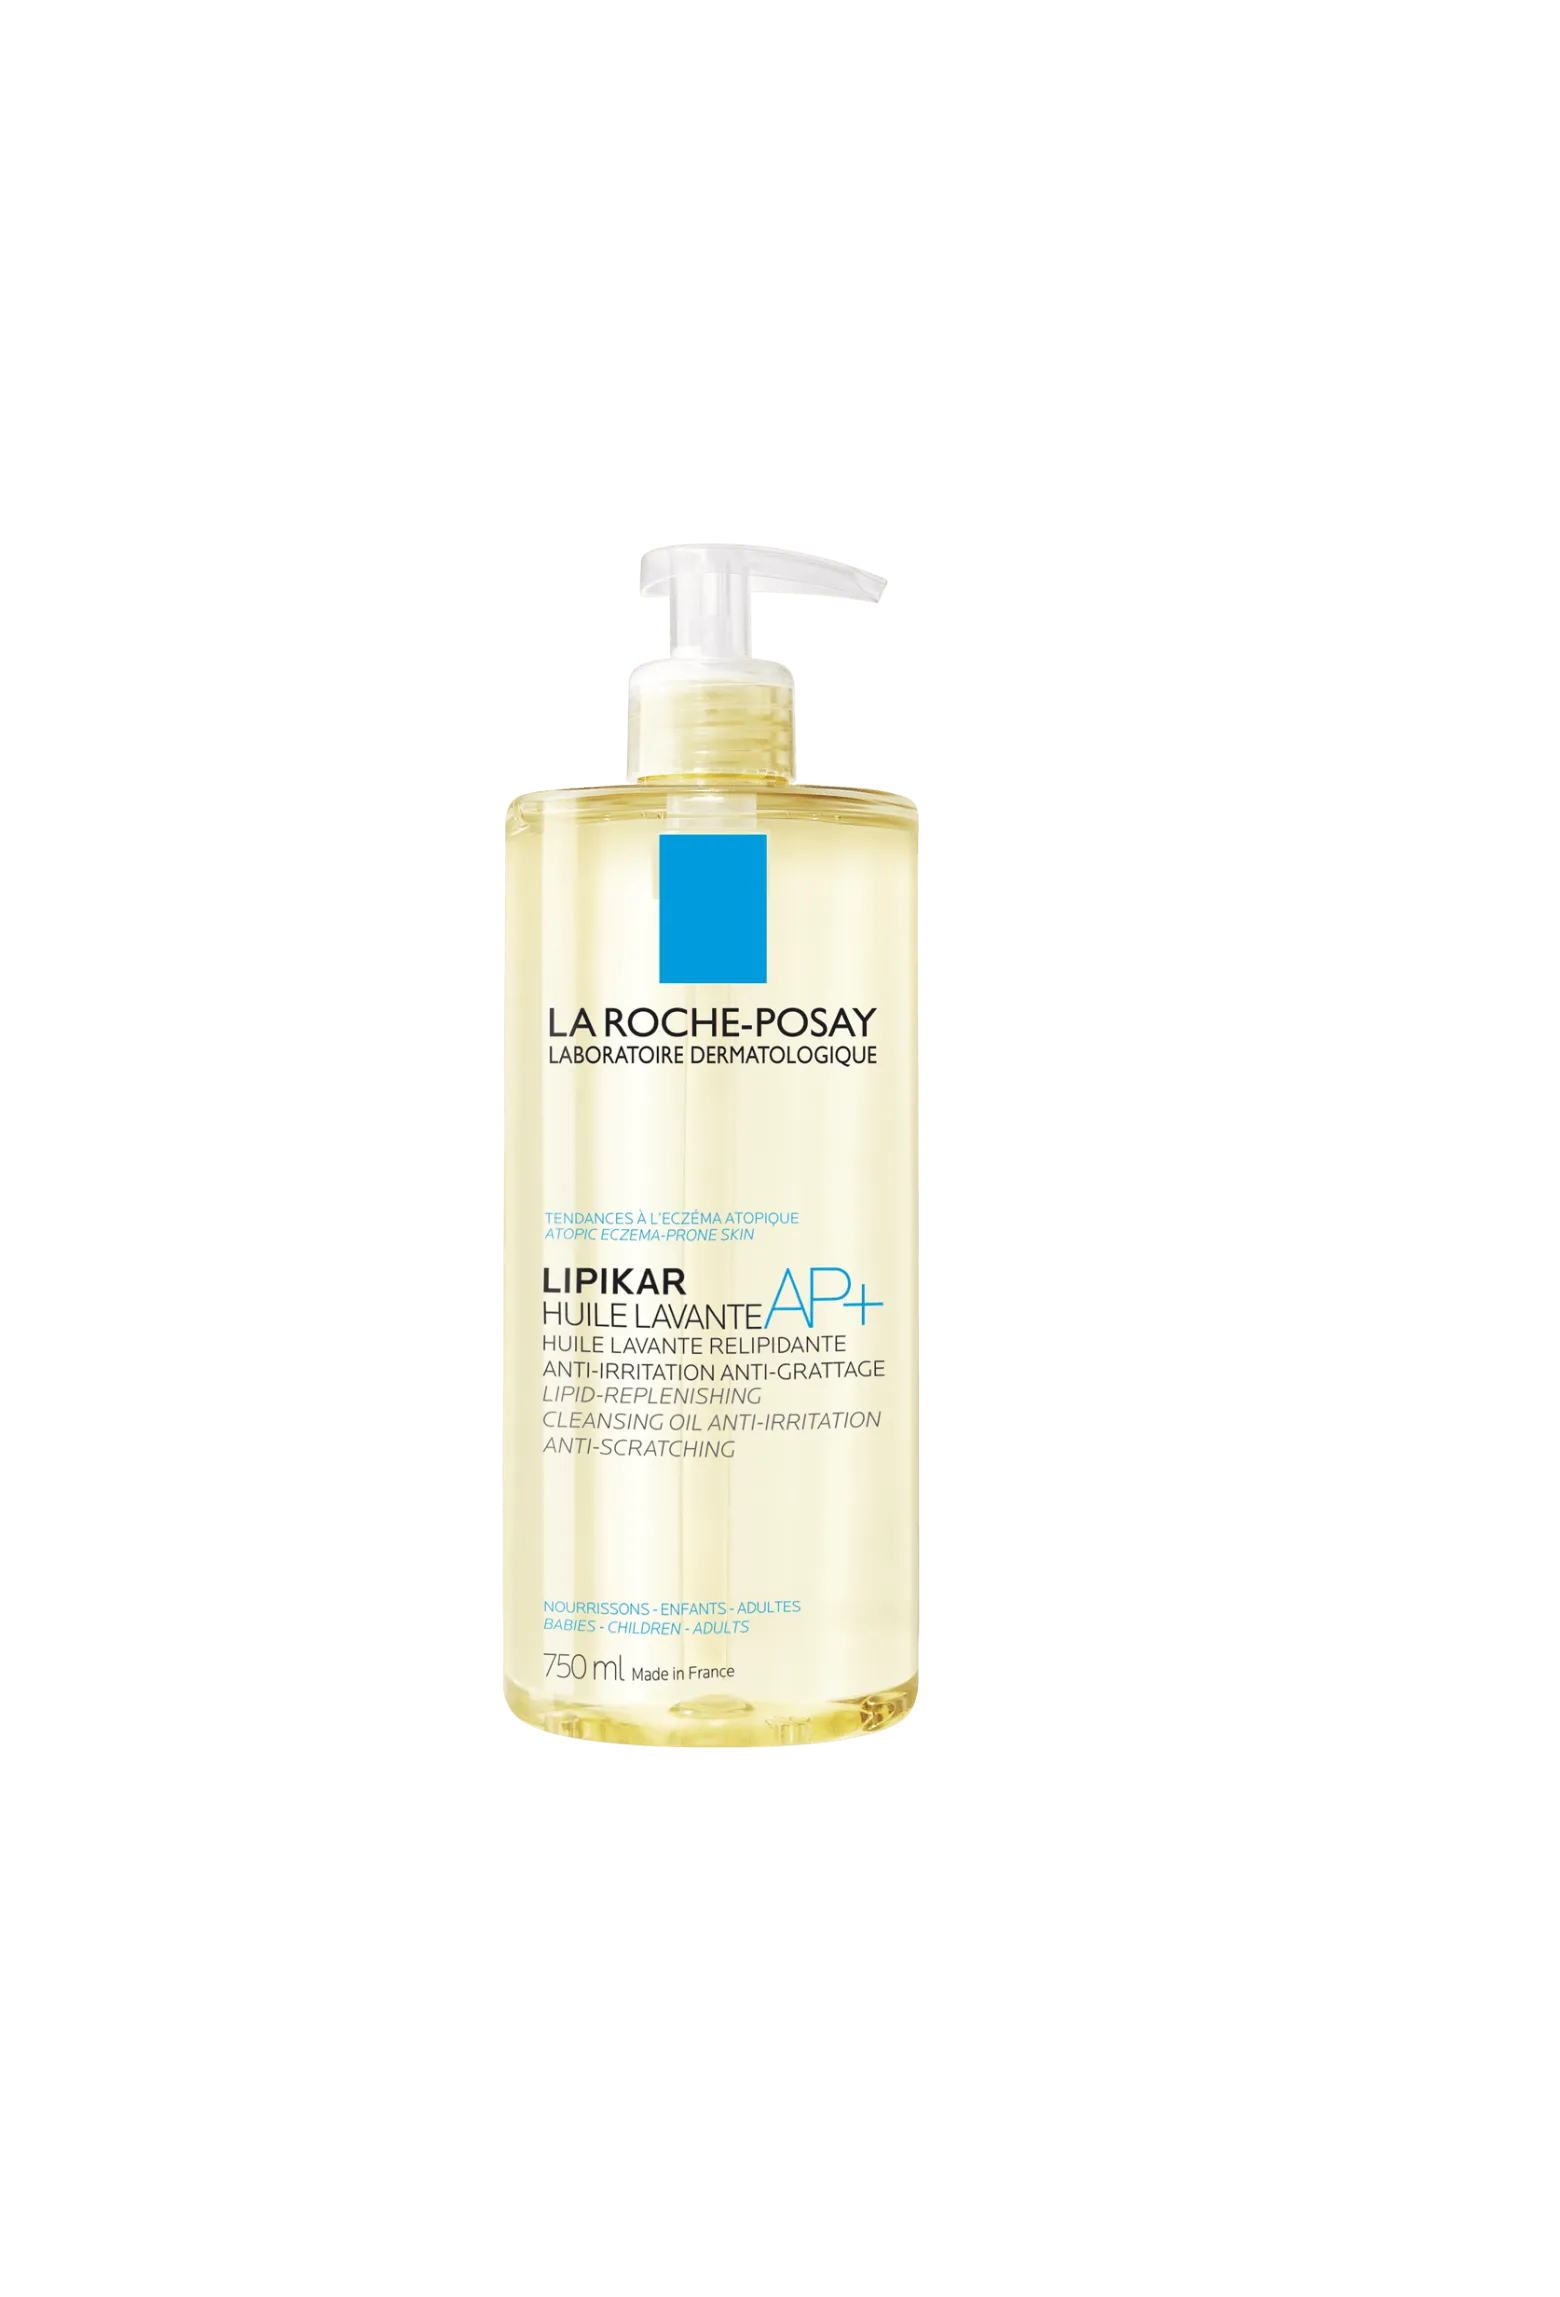 La Roche-Posay Lipikar Huile Lavante AP+, olejek myjący uzupełniający poziom lipidów, 750 ml 